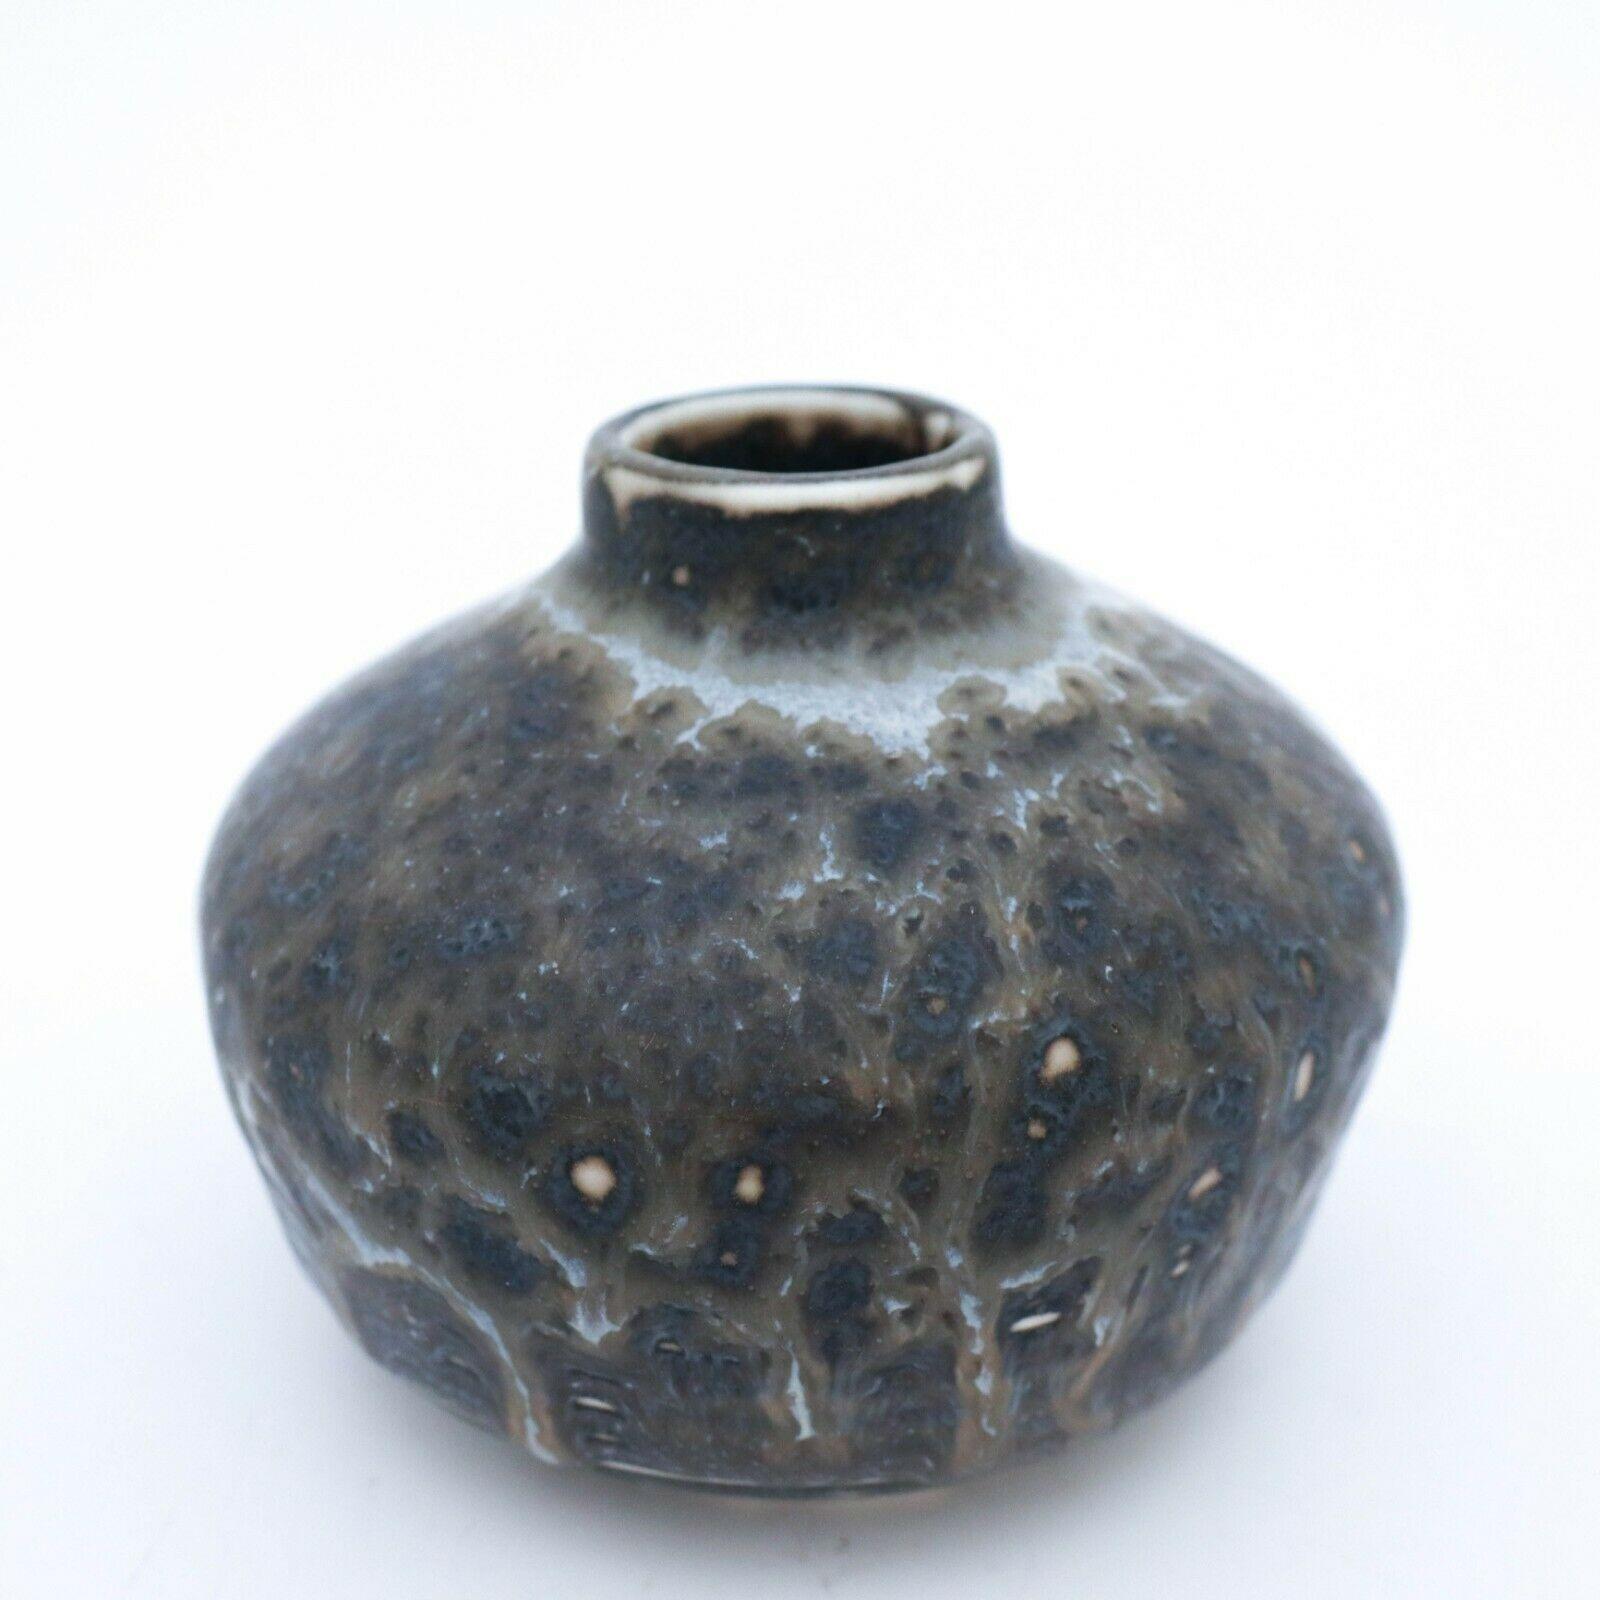 Scandinavian Modern Stoneware Vase, Gunnar Nylund, Rörstrand, 1950-1960s